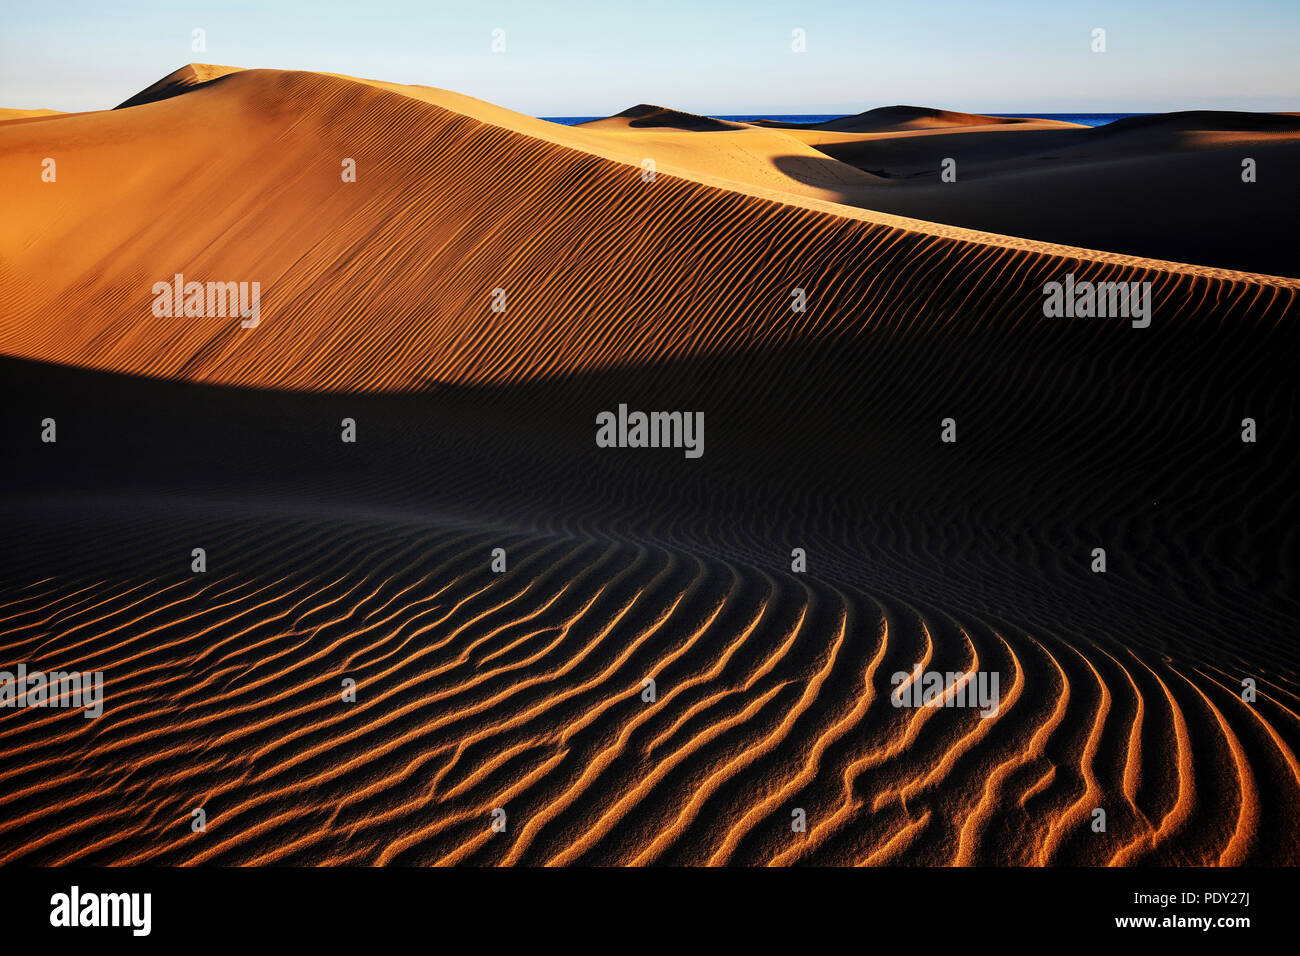 Paysage de dunes, Dunes de Maspalomas, Dunas de Maspalomas, les structures dans le sable, lumière du soir, réserve naturelle, Gran Canaria Banque D'Images